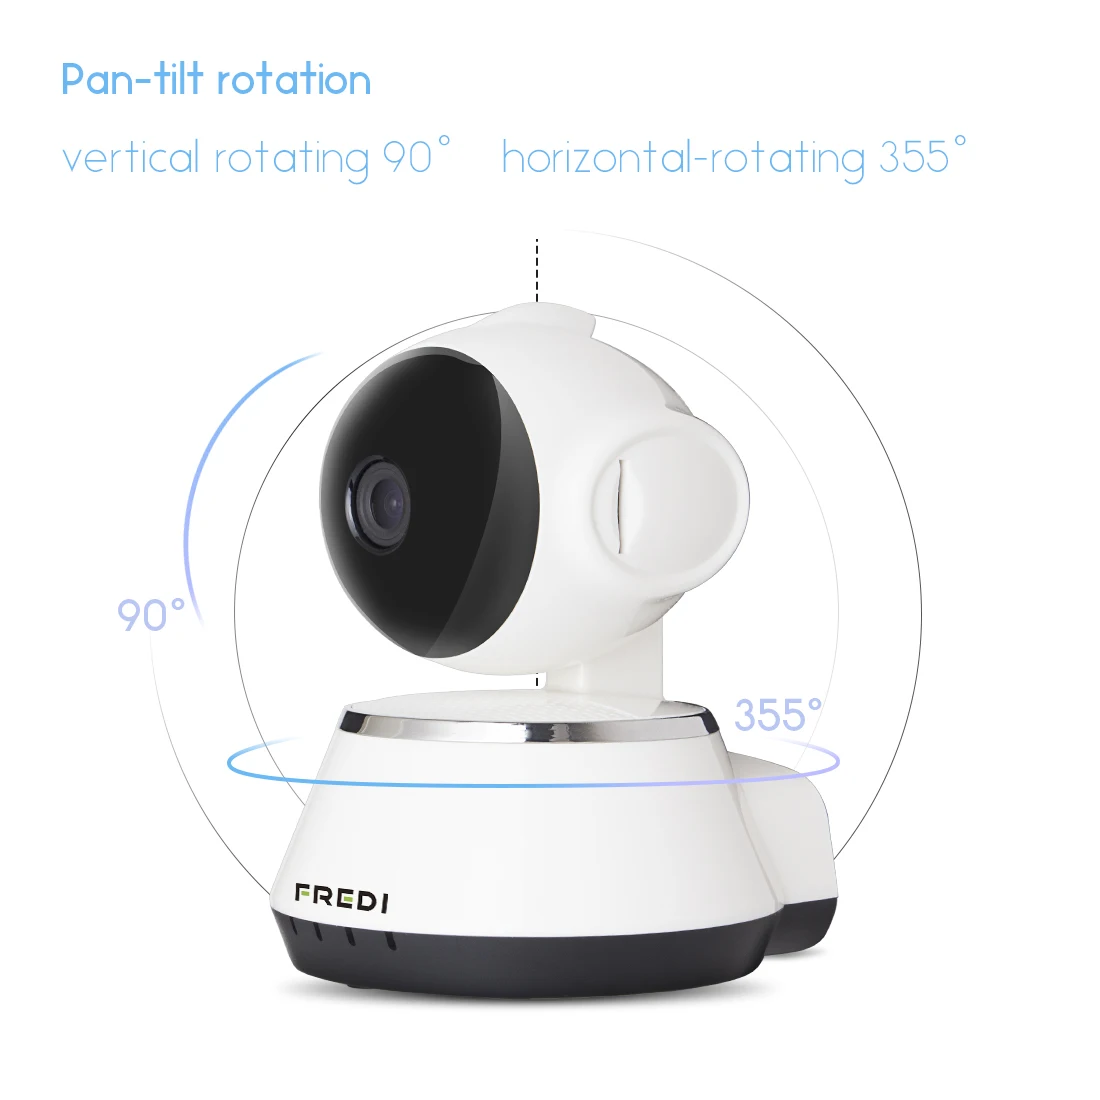 FREDI 1080 P/720 P домашняя IP камера безопасности двухсторонняя аудио беспроводная камера WiFi камера видеонаблюдения CCTV камера ночного видения